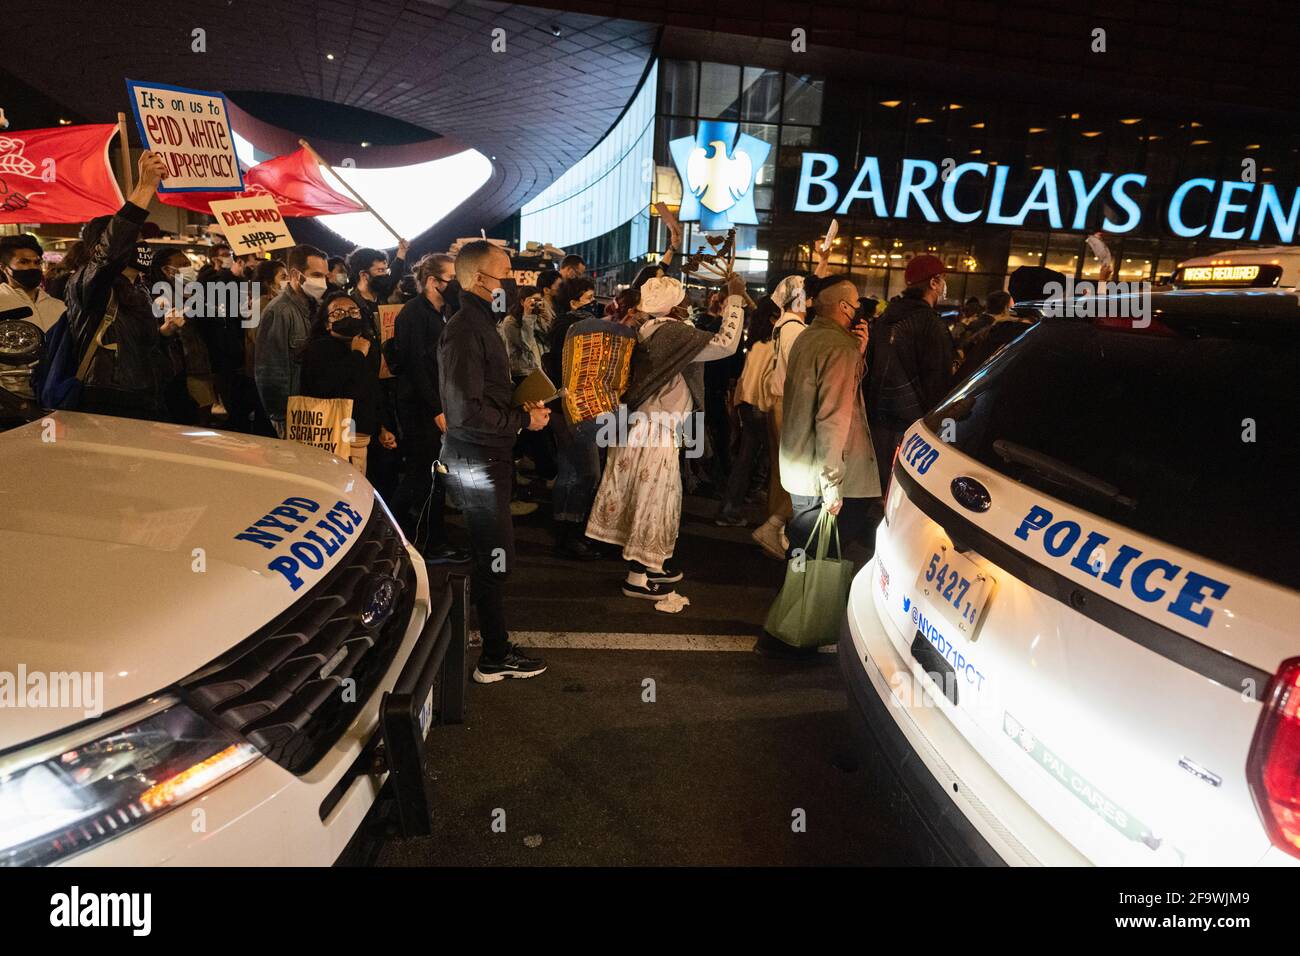 Brooklyn, Nueva York, EE.UU. 20 de abril de 2021. Los manifestantes marchan a través de la calle en el Centro Barclays horas después de que un jurado encontró al ex oficial de policía de Minneapolis Derek Chauvin culpable de asesinar a George Floyd en 2020. Foto de stock